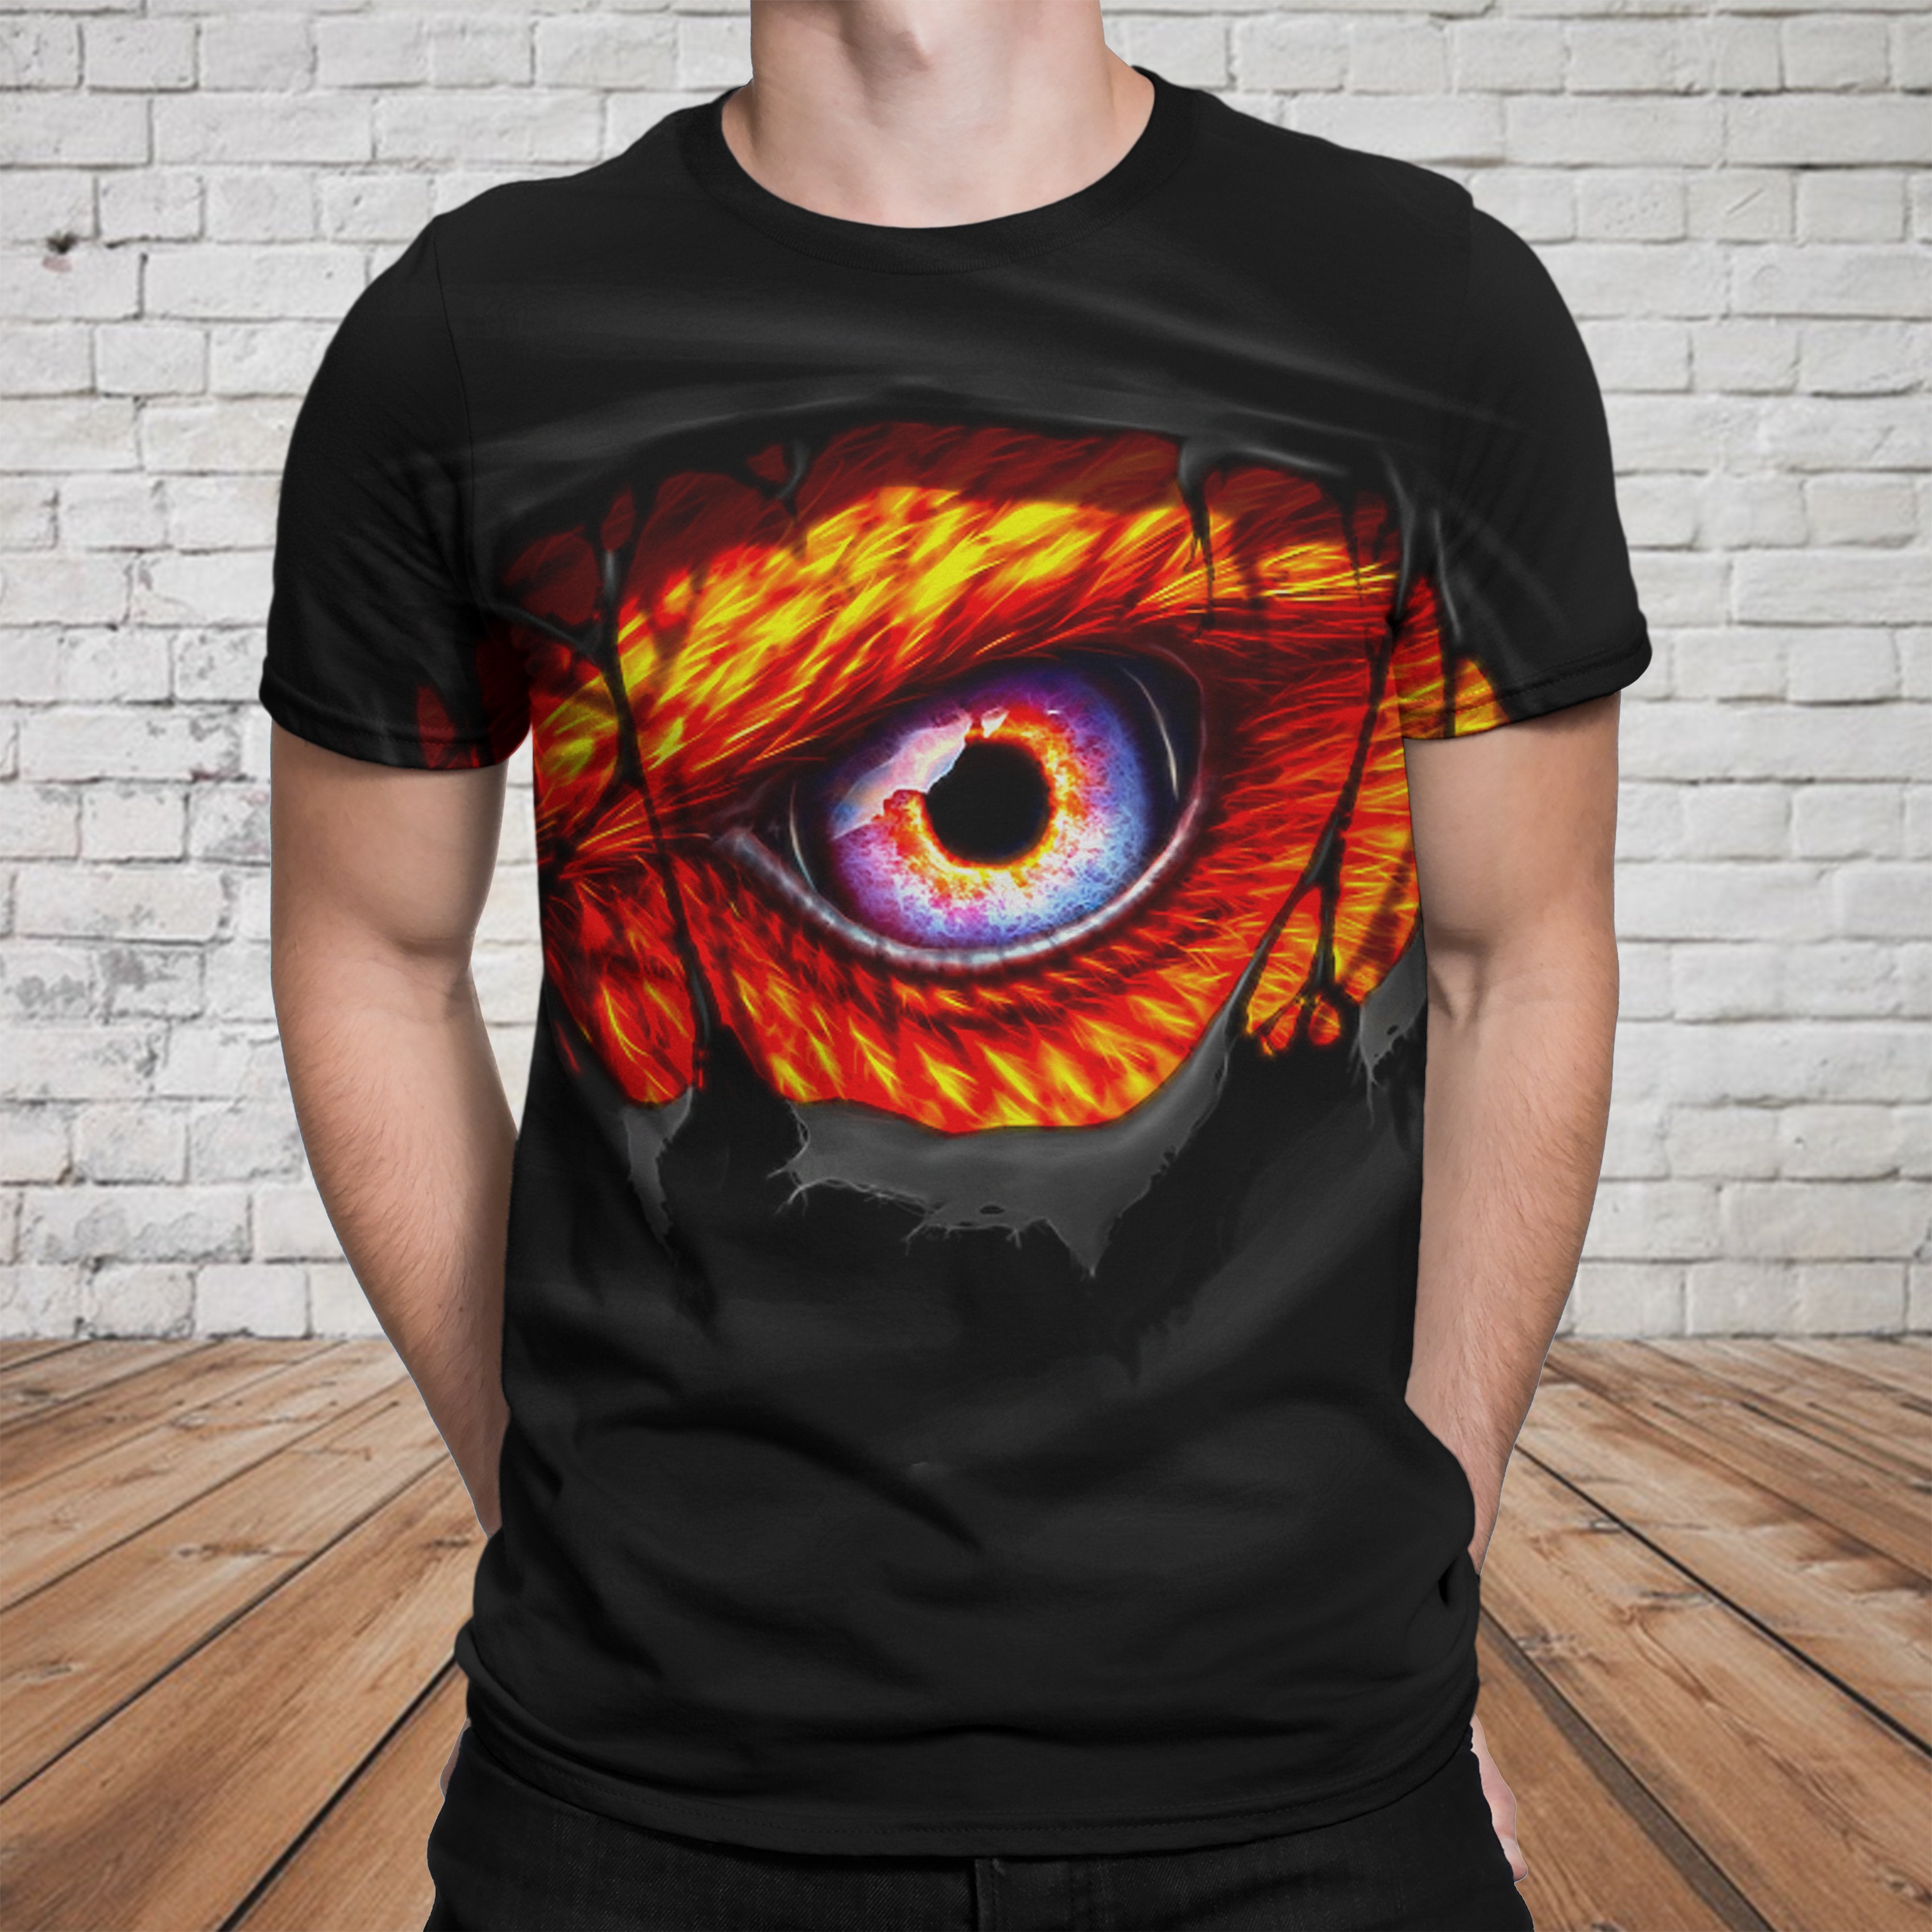 Dragon 3D T-shirt - 03796